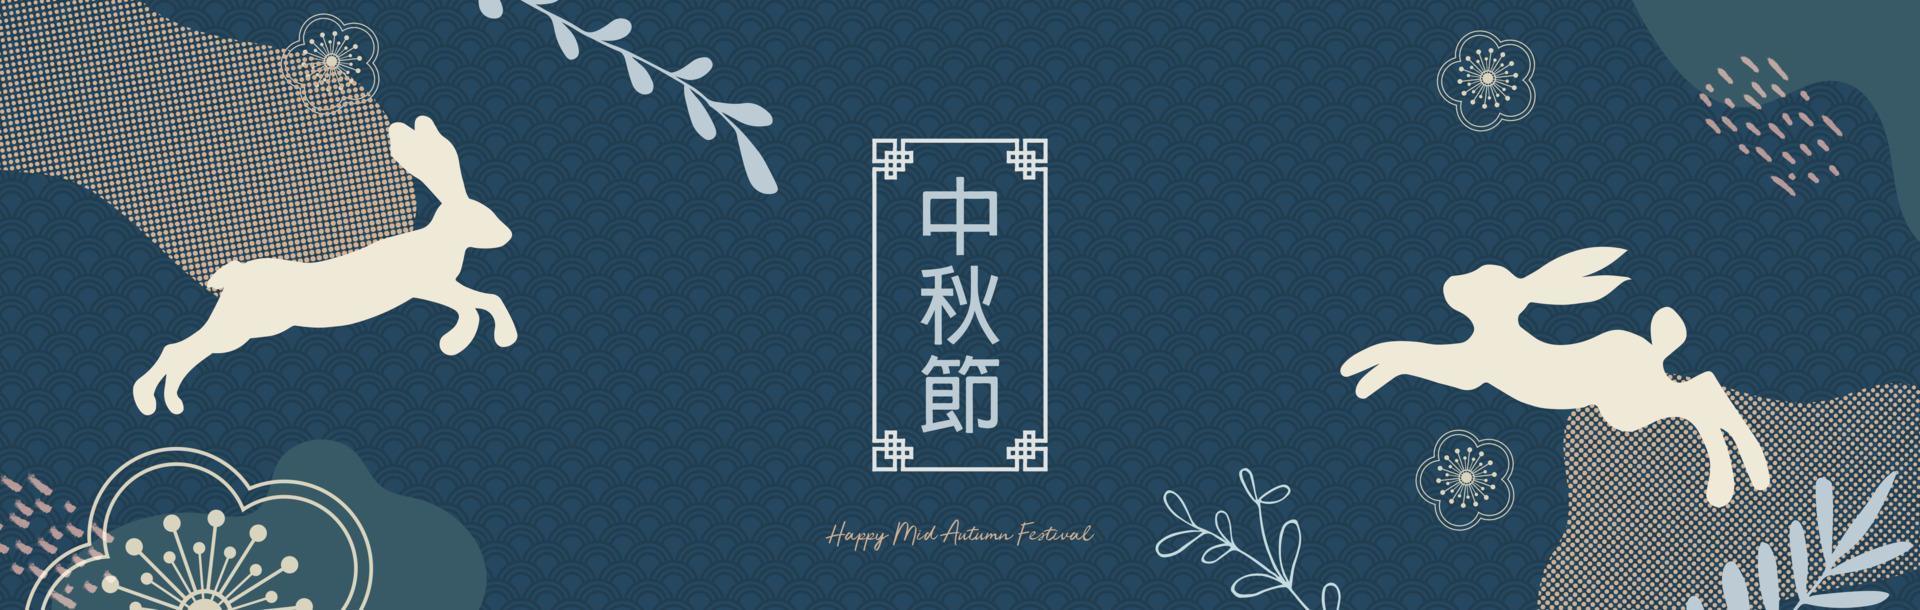 design moderno do festival do meio do outono com lua pintada, bolo de lua, coelhinhos fofos, plantas e pontos, respingos de tinta em fundo azul escuro. tradução do festival chinês do meio do outono. vetor